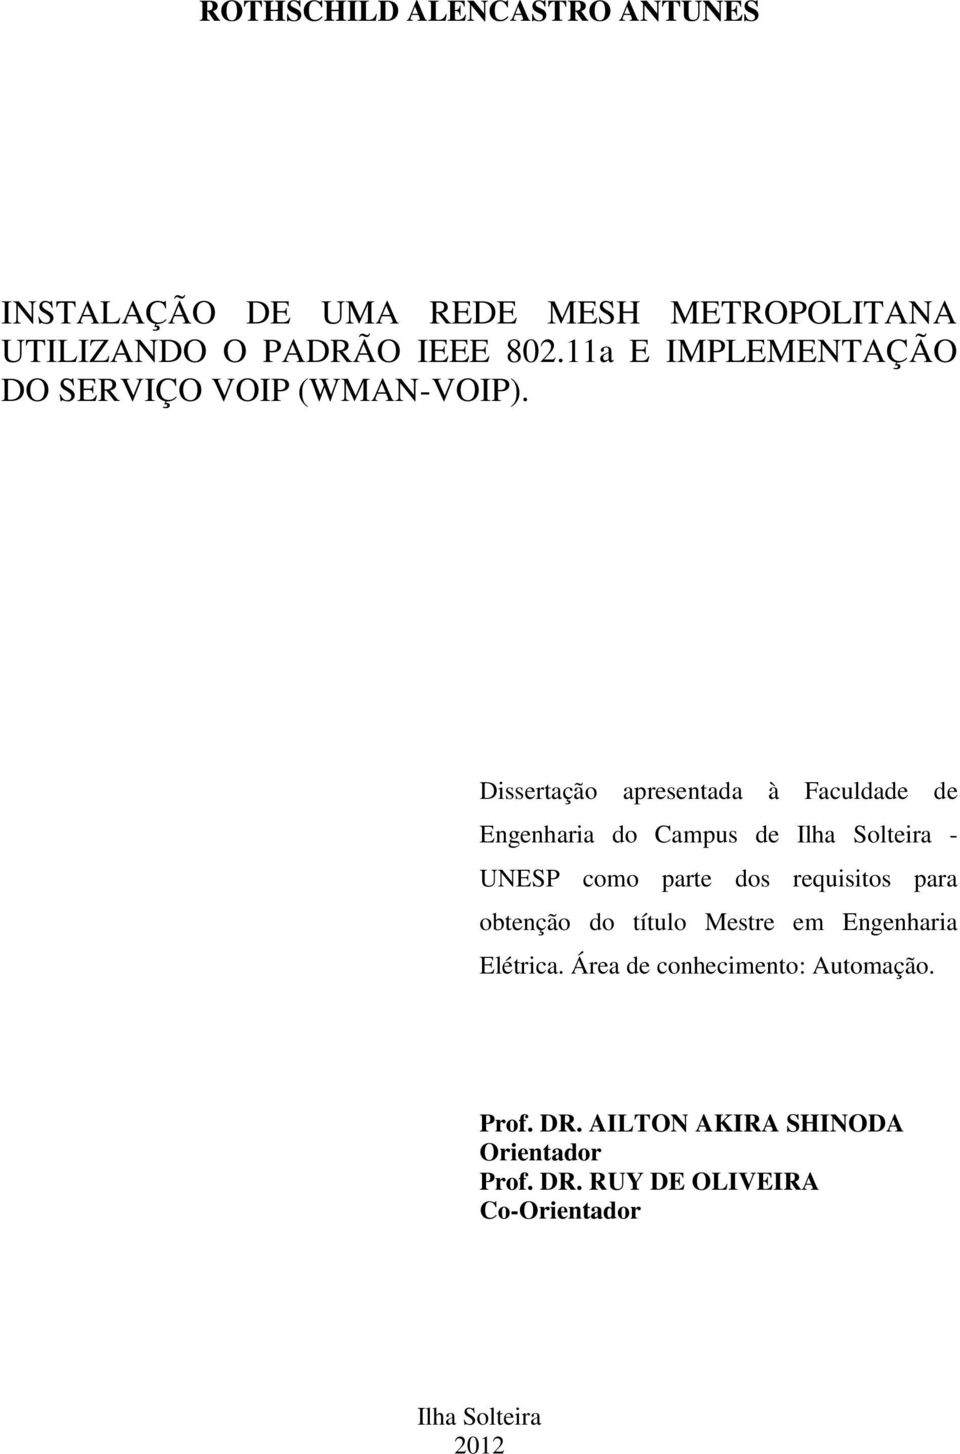 Dissertação apresentada à Faculdade de Engenharia do Campus de Ilha Solteira - UNESP como parte dos requisitos